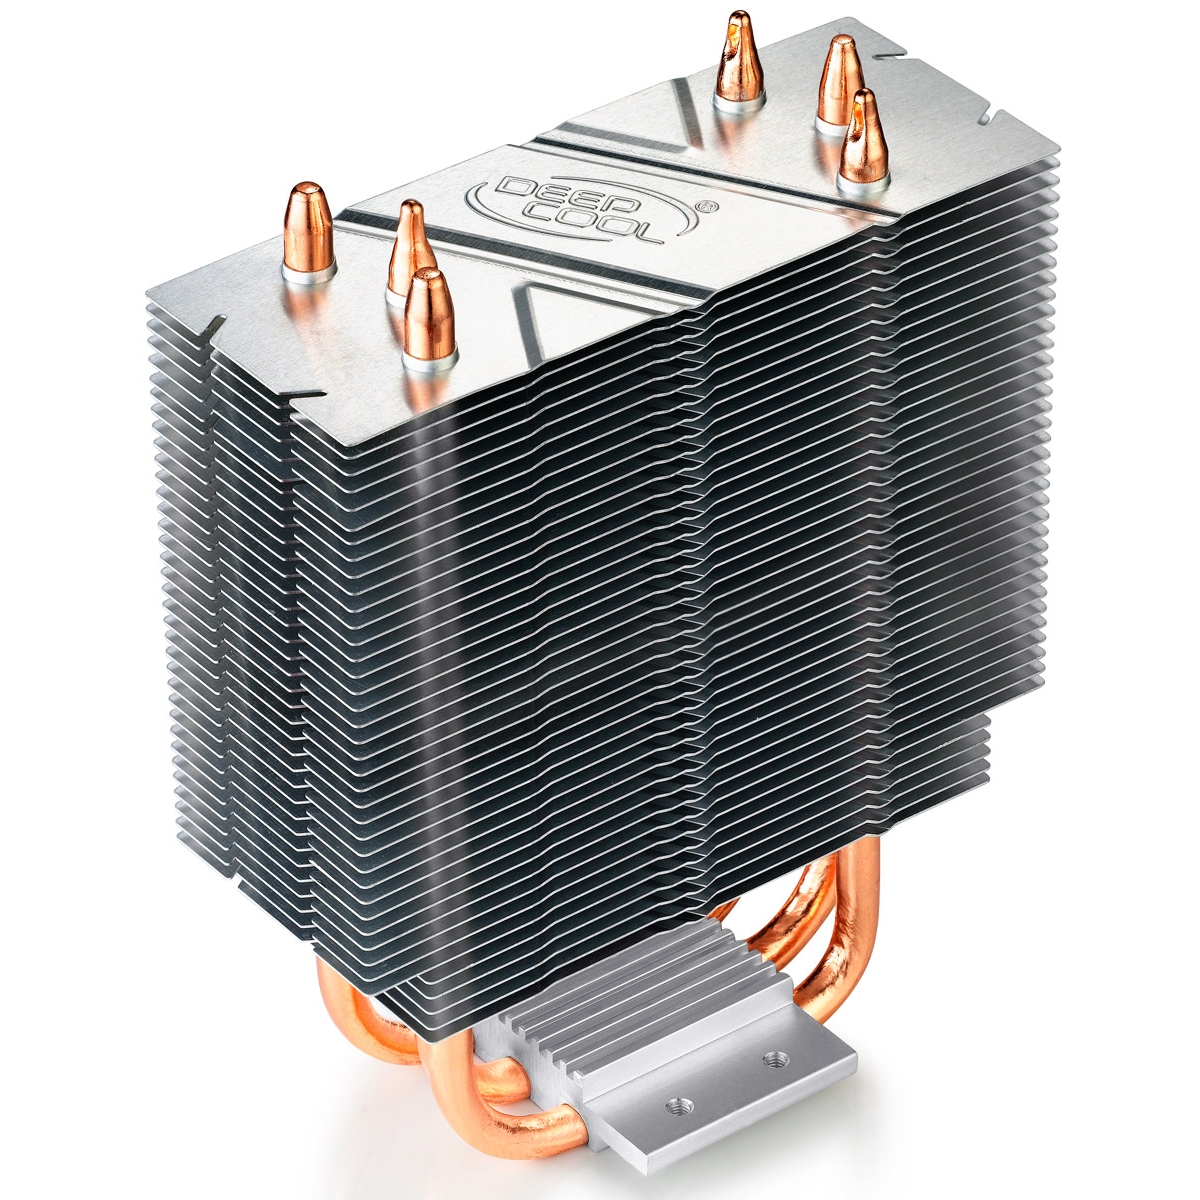 Cooler para processador DeepCool Gammaxx 300, Blue 120mm, Intel-AMD, DP-MCH3-GMX300